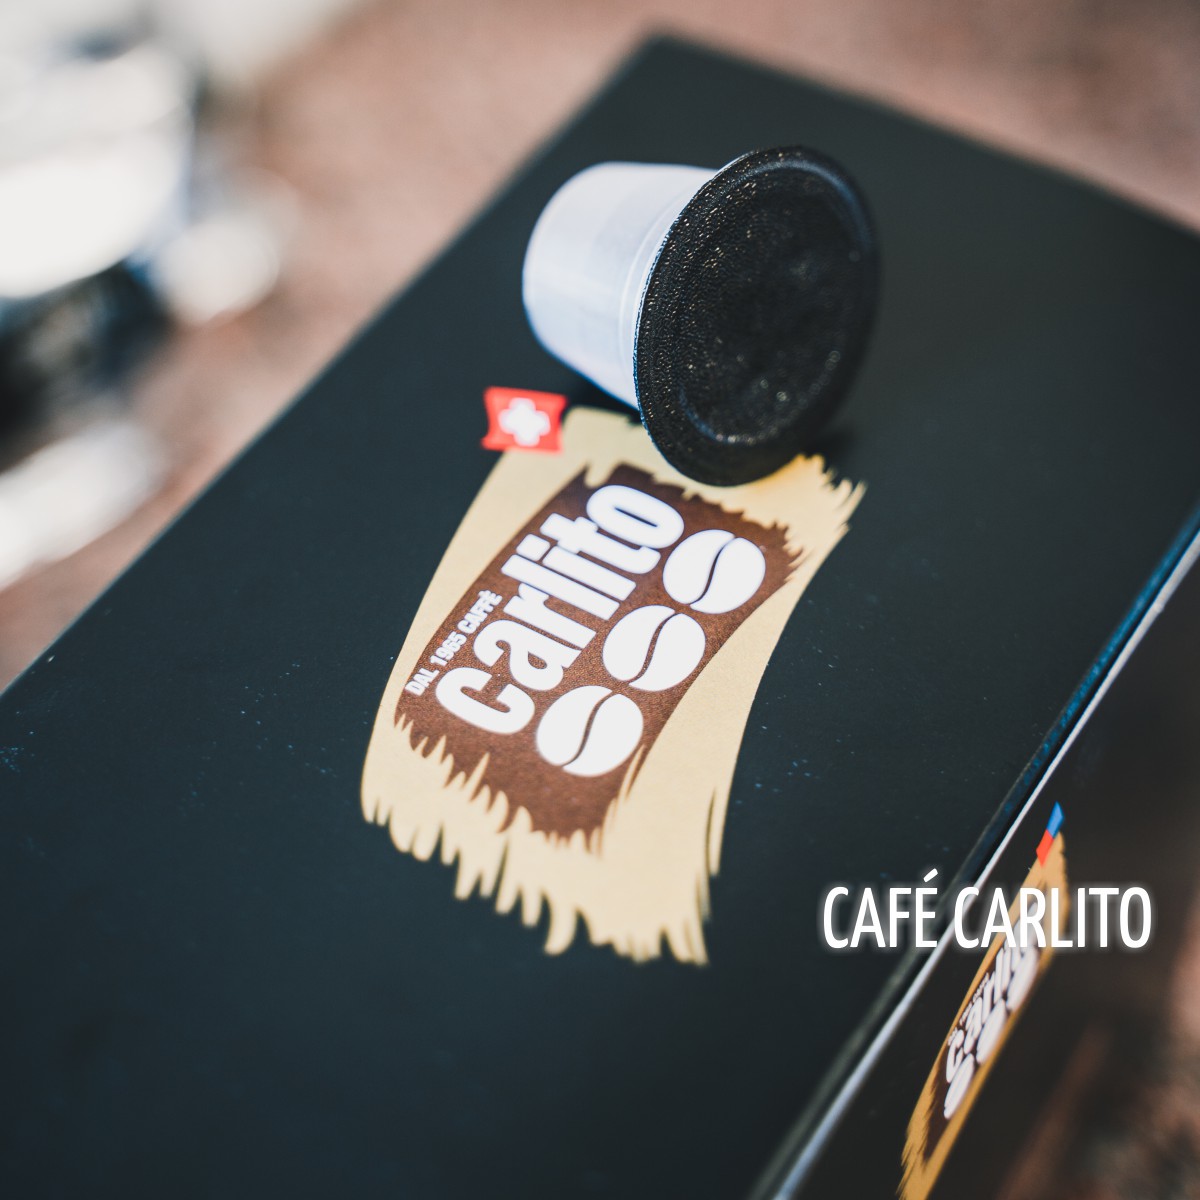 Café Carlito Bifrare